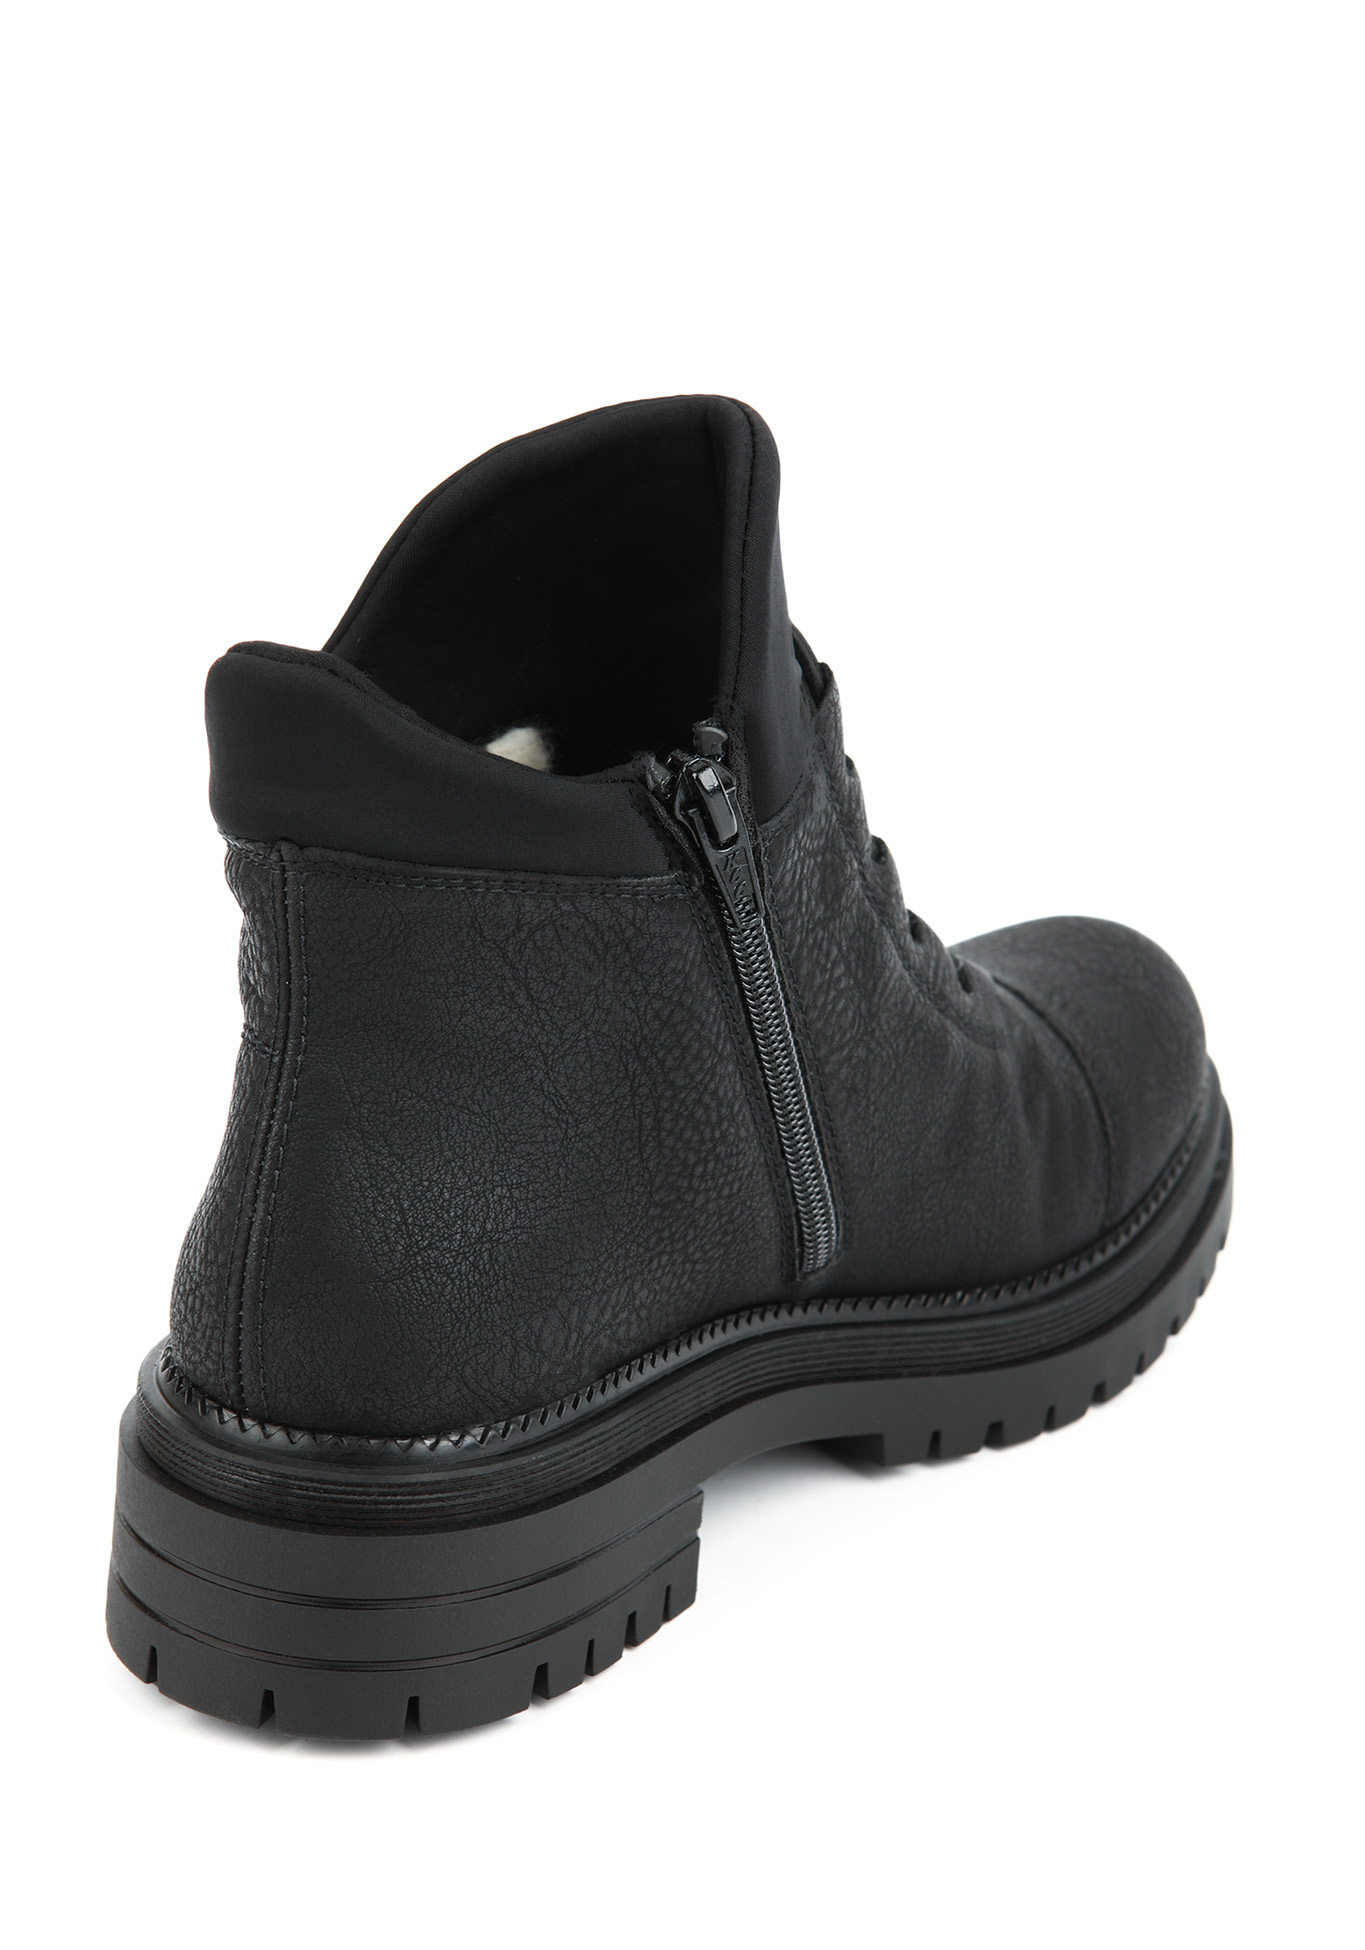 Ботинки женские "Виолла" Rieker, размер 38, цвет черный - фото 7